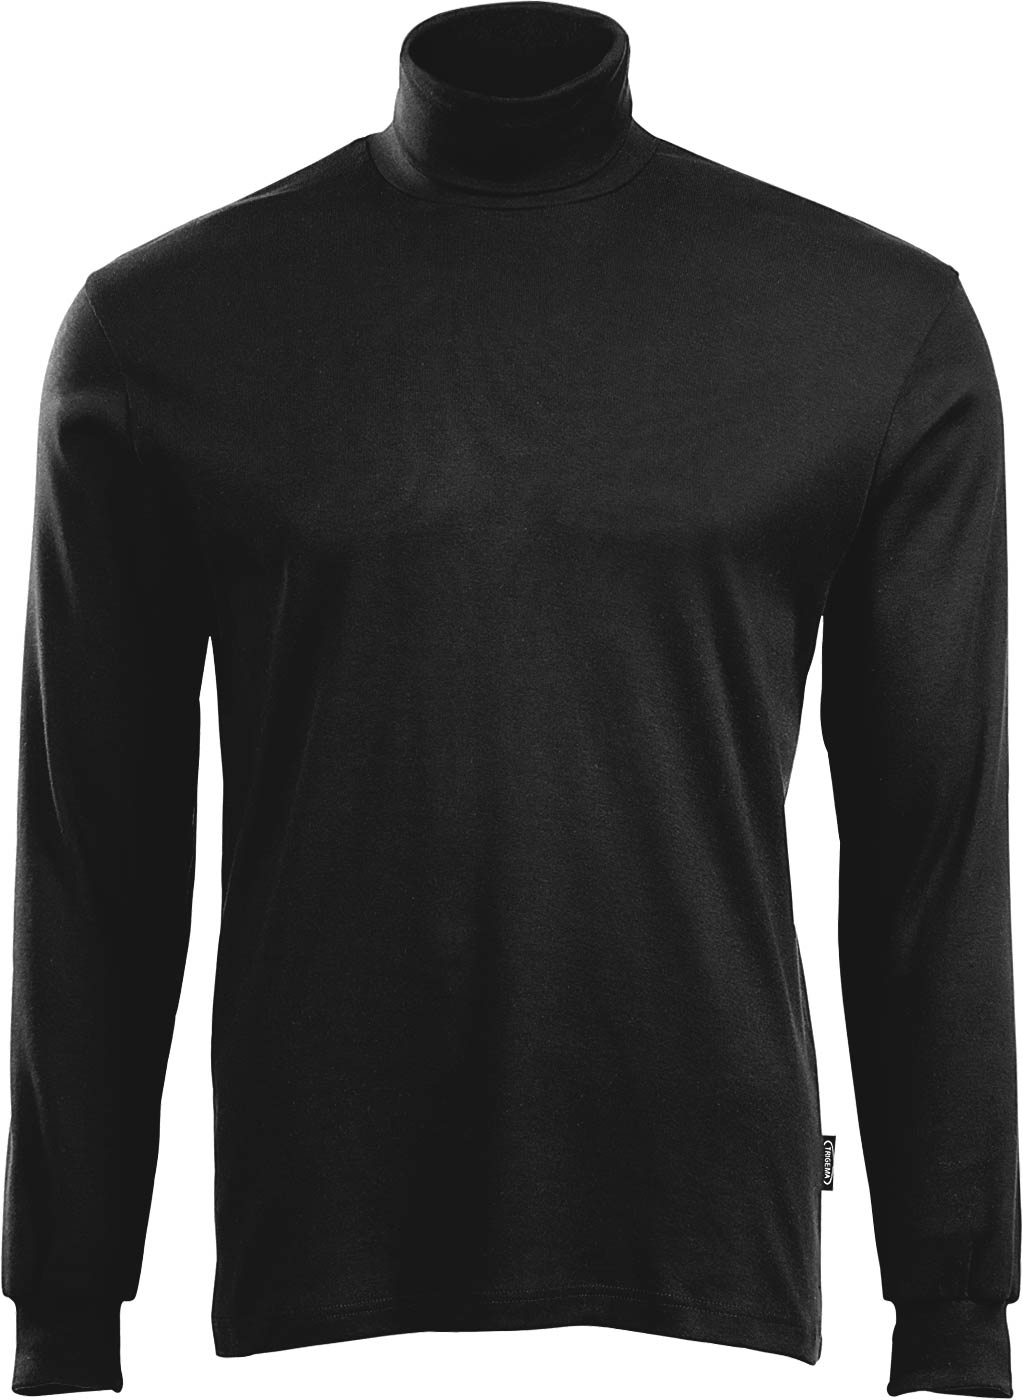 schwarz - Langarm-Shirt Trigema in 100% Rollkragen Baumwolle